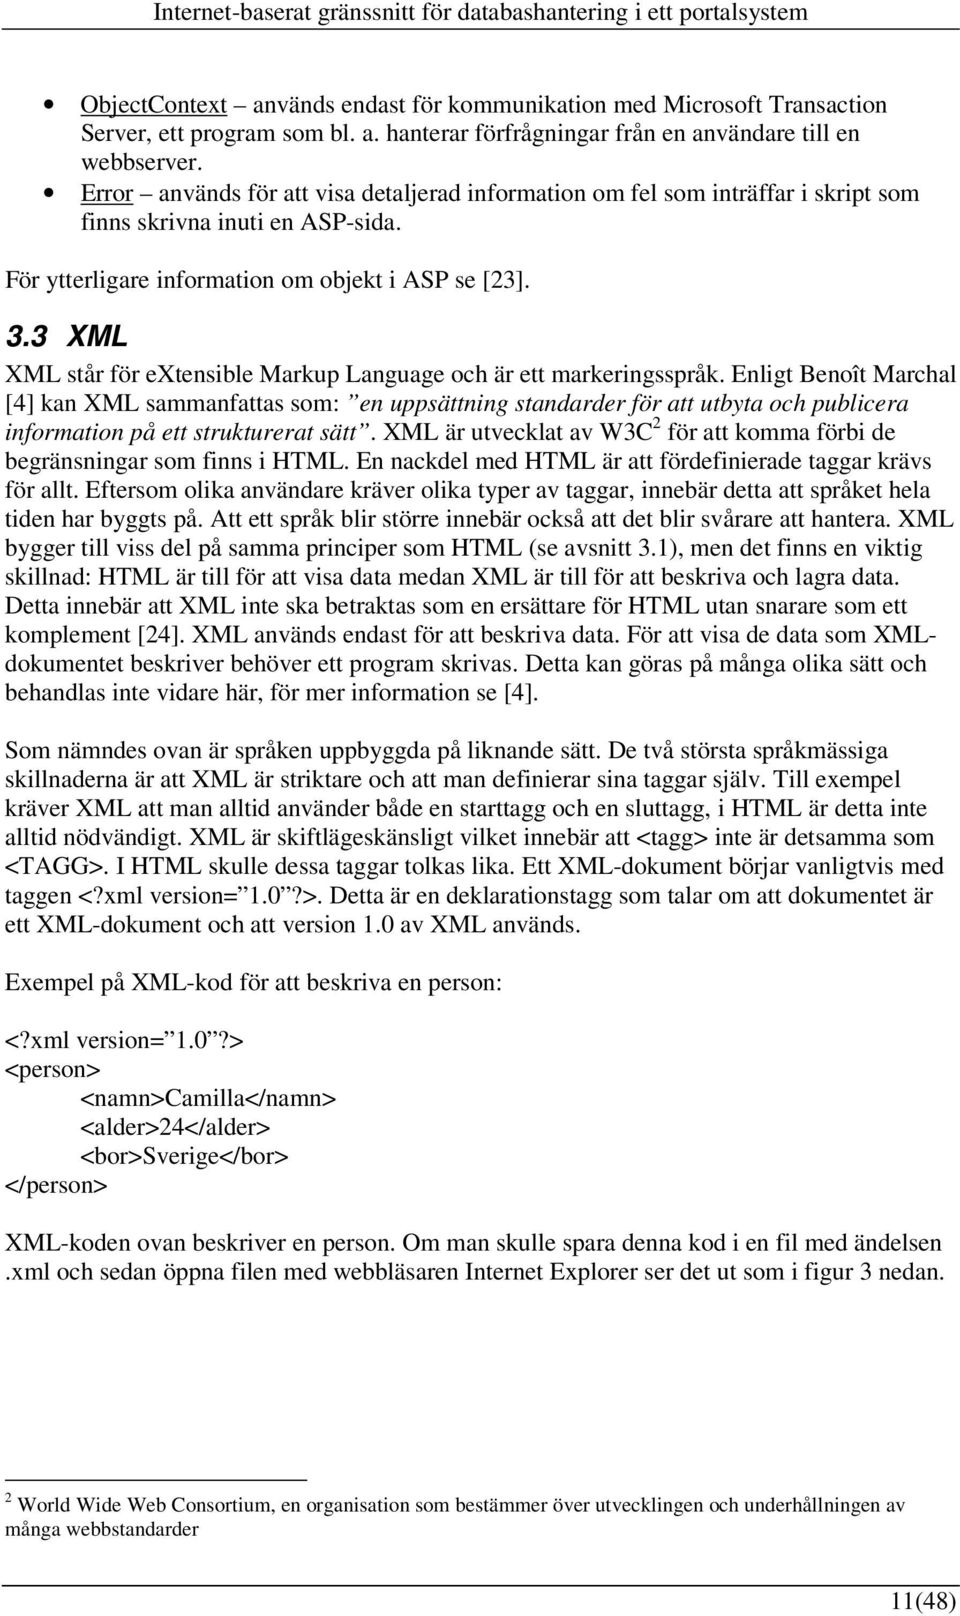 3 XML XML står för extensible Markup Language och är ett markeringsspråk.